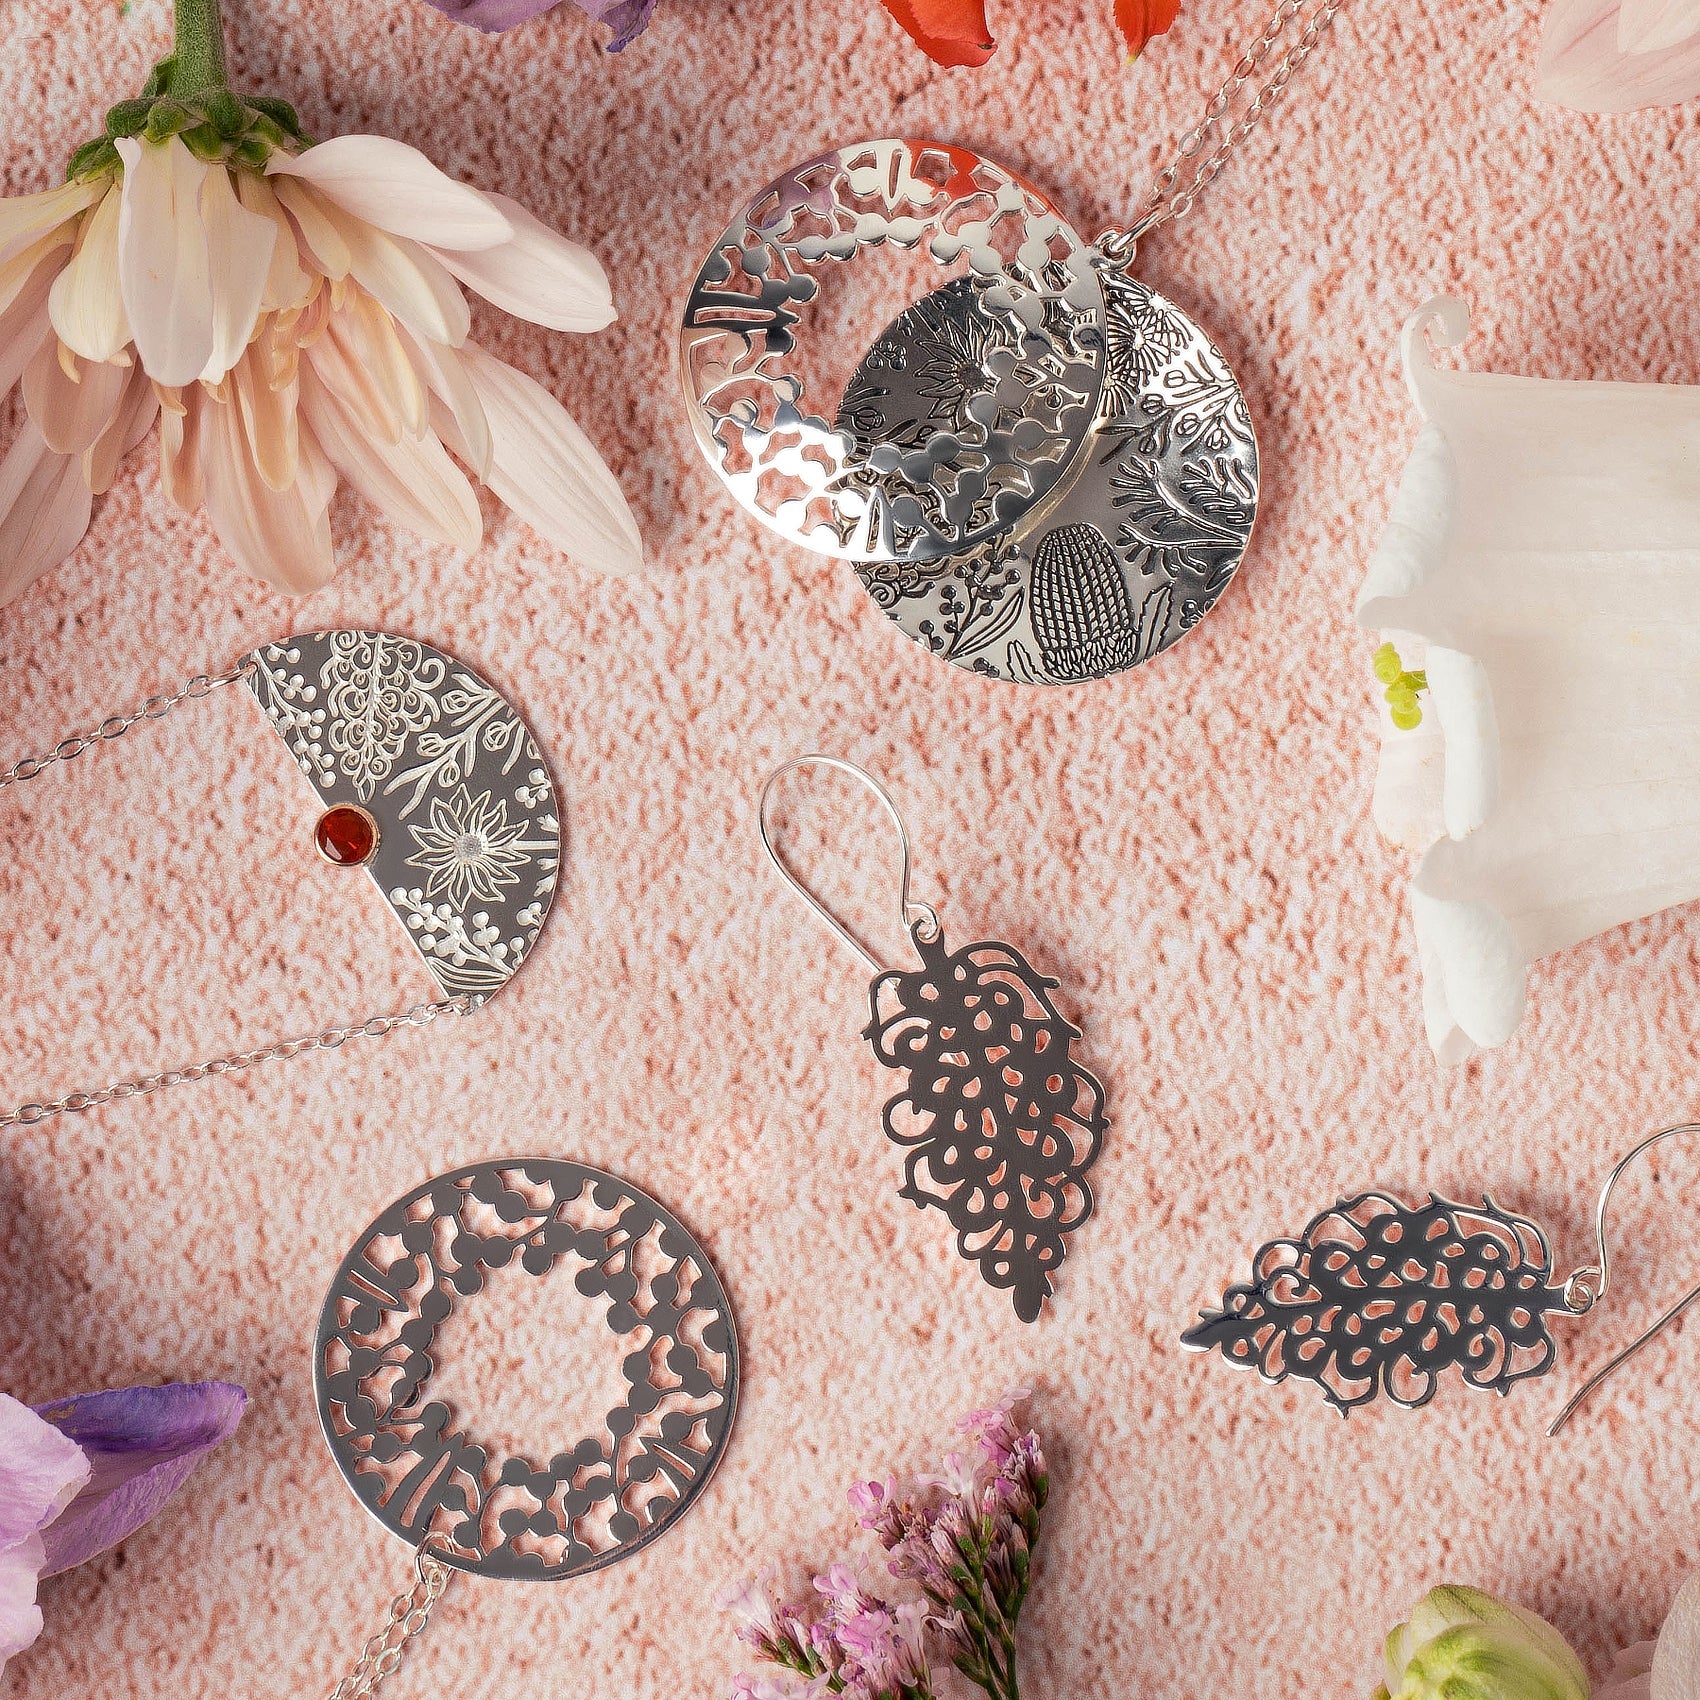 Grevillea Flower Silver Dangle Earrings - Simone Walsh Jewellery Australia